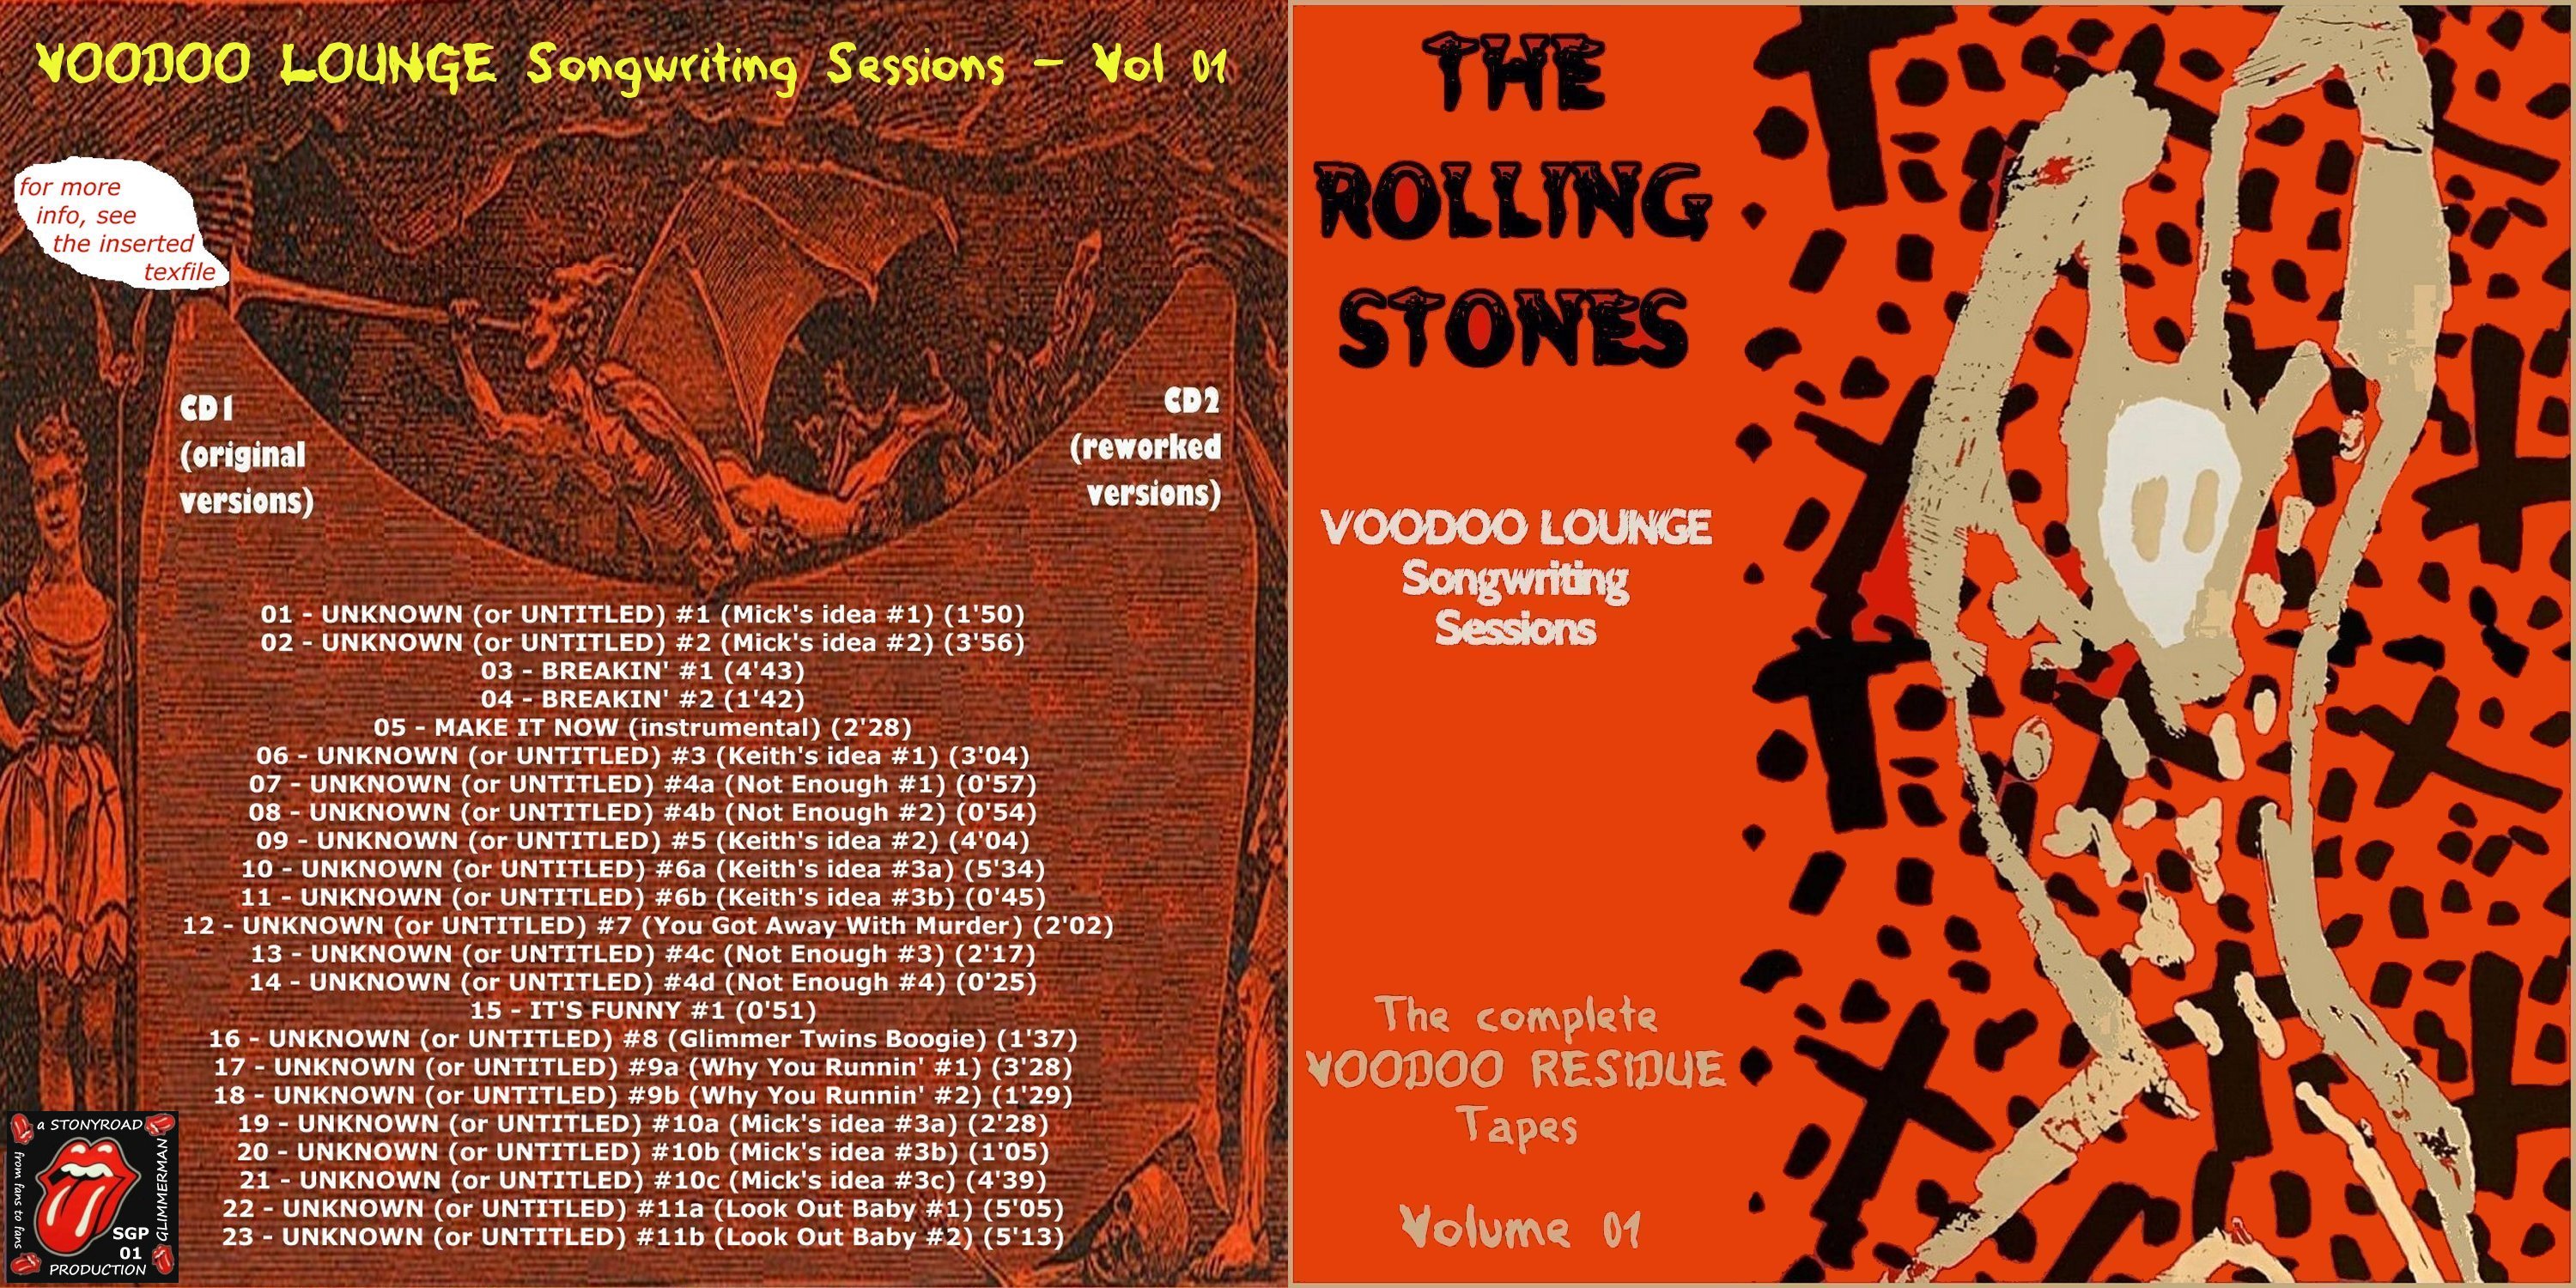 RollingStones1993-04-29Vol01VoodoLoungeSongwritingSessions (1).jpg